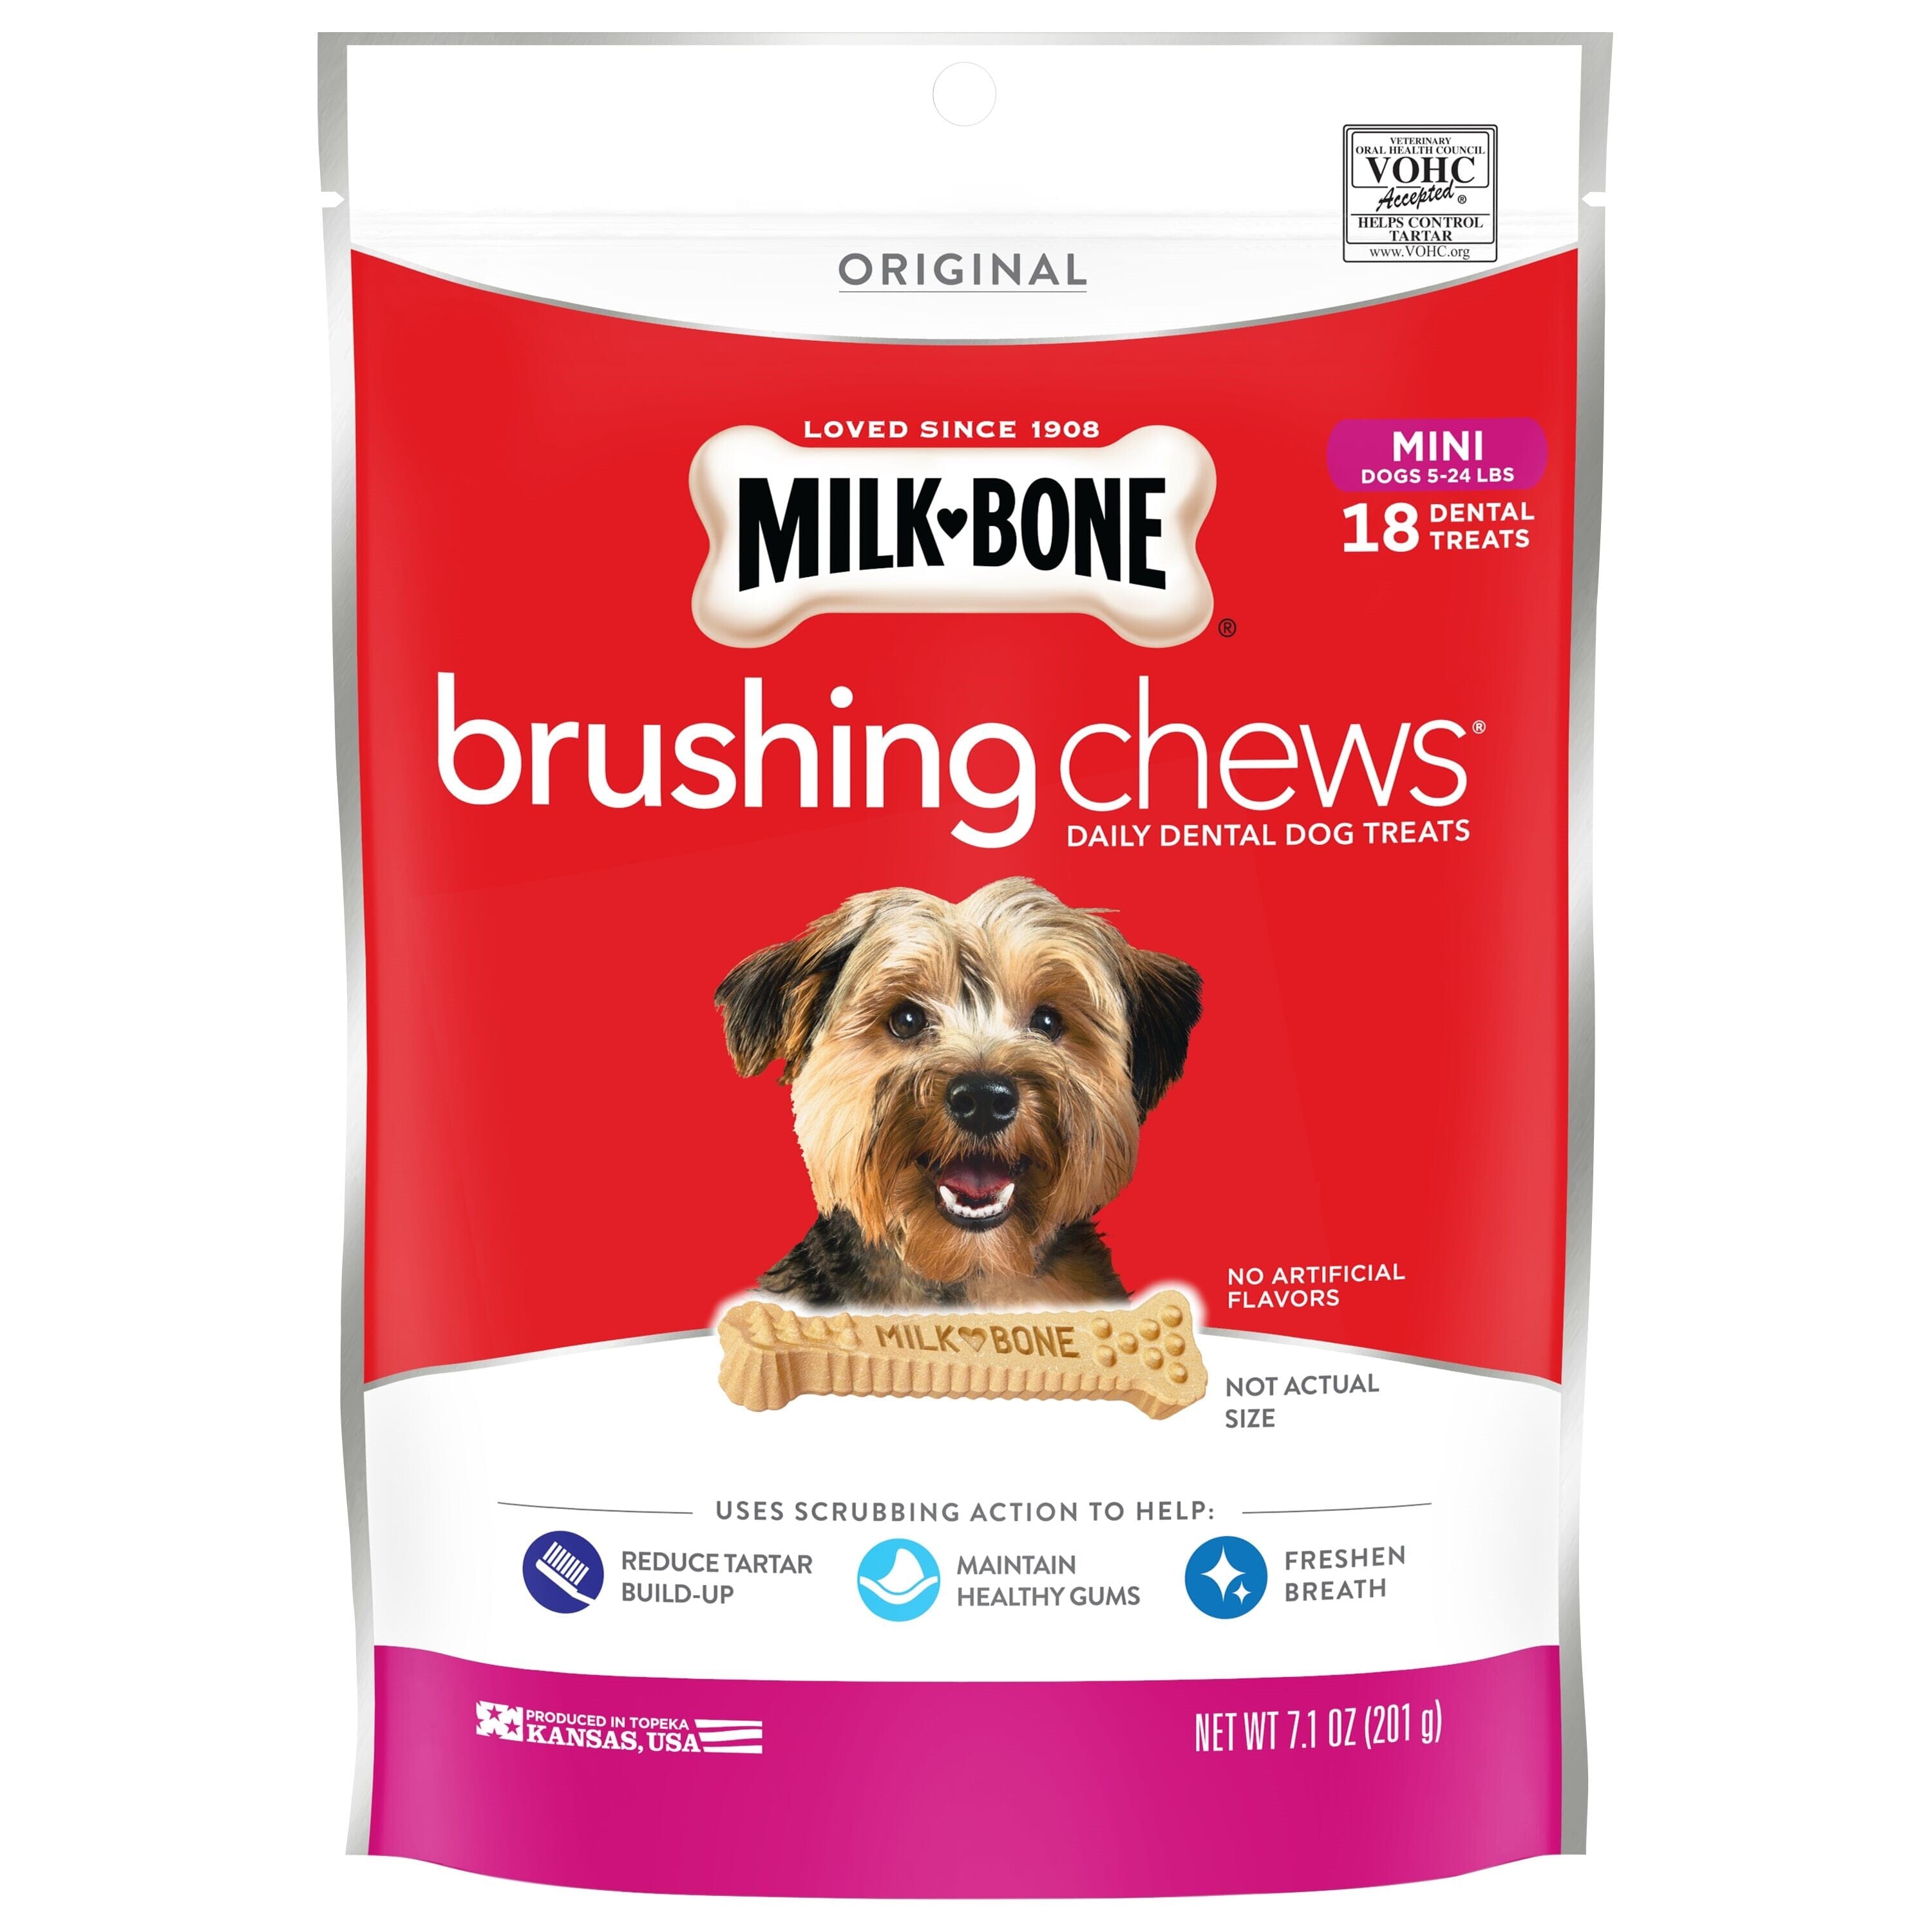 Milk-Bone Brushing Chews Dog Treat Original - 5-24 lb, Extra Small - 18 Count  